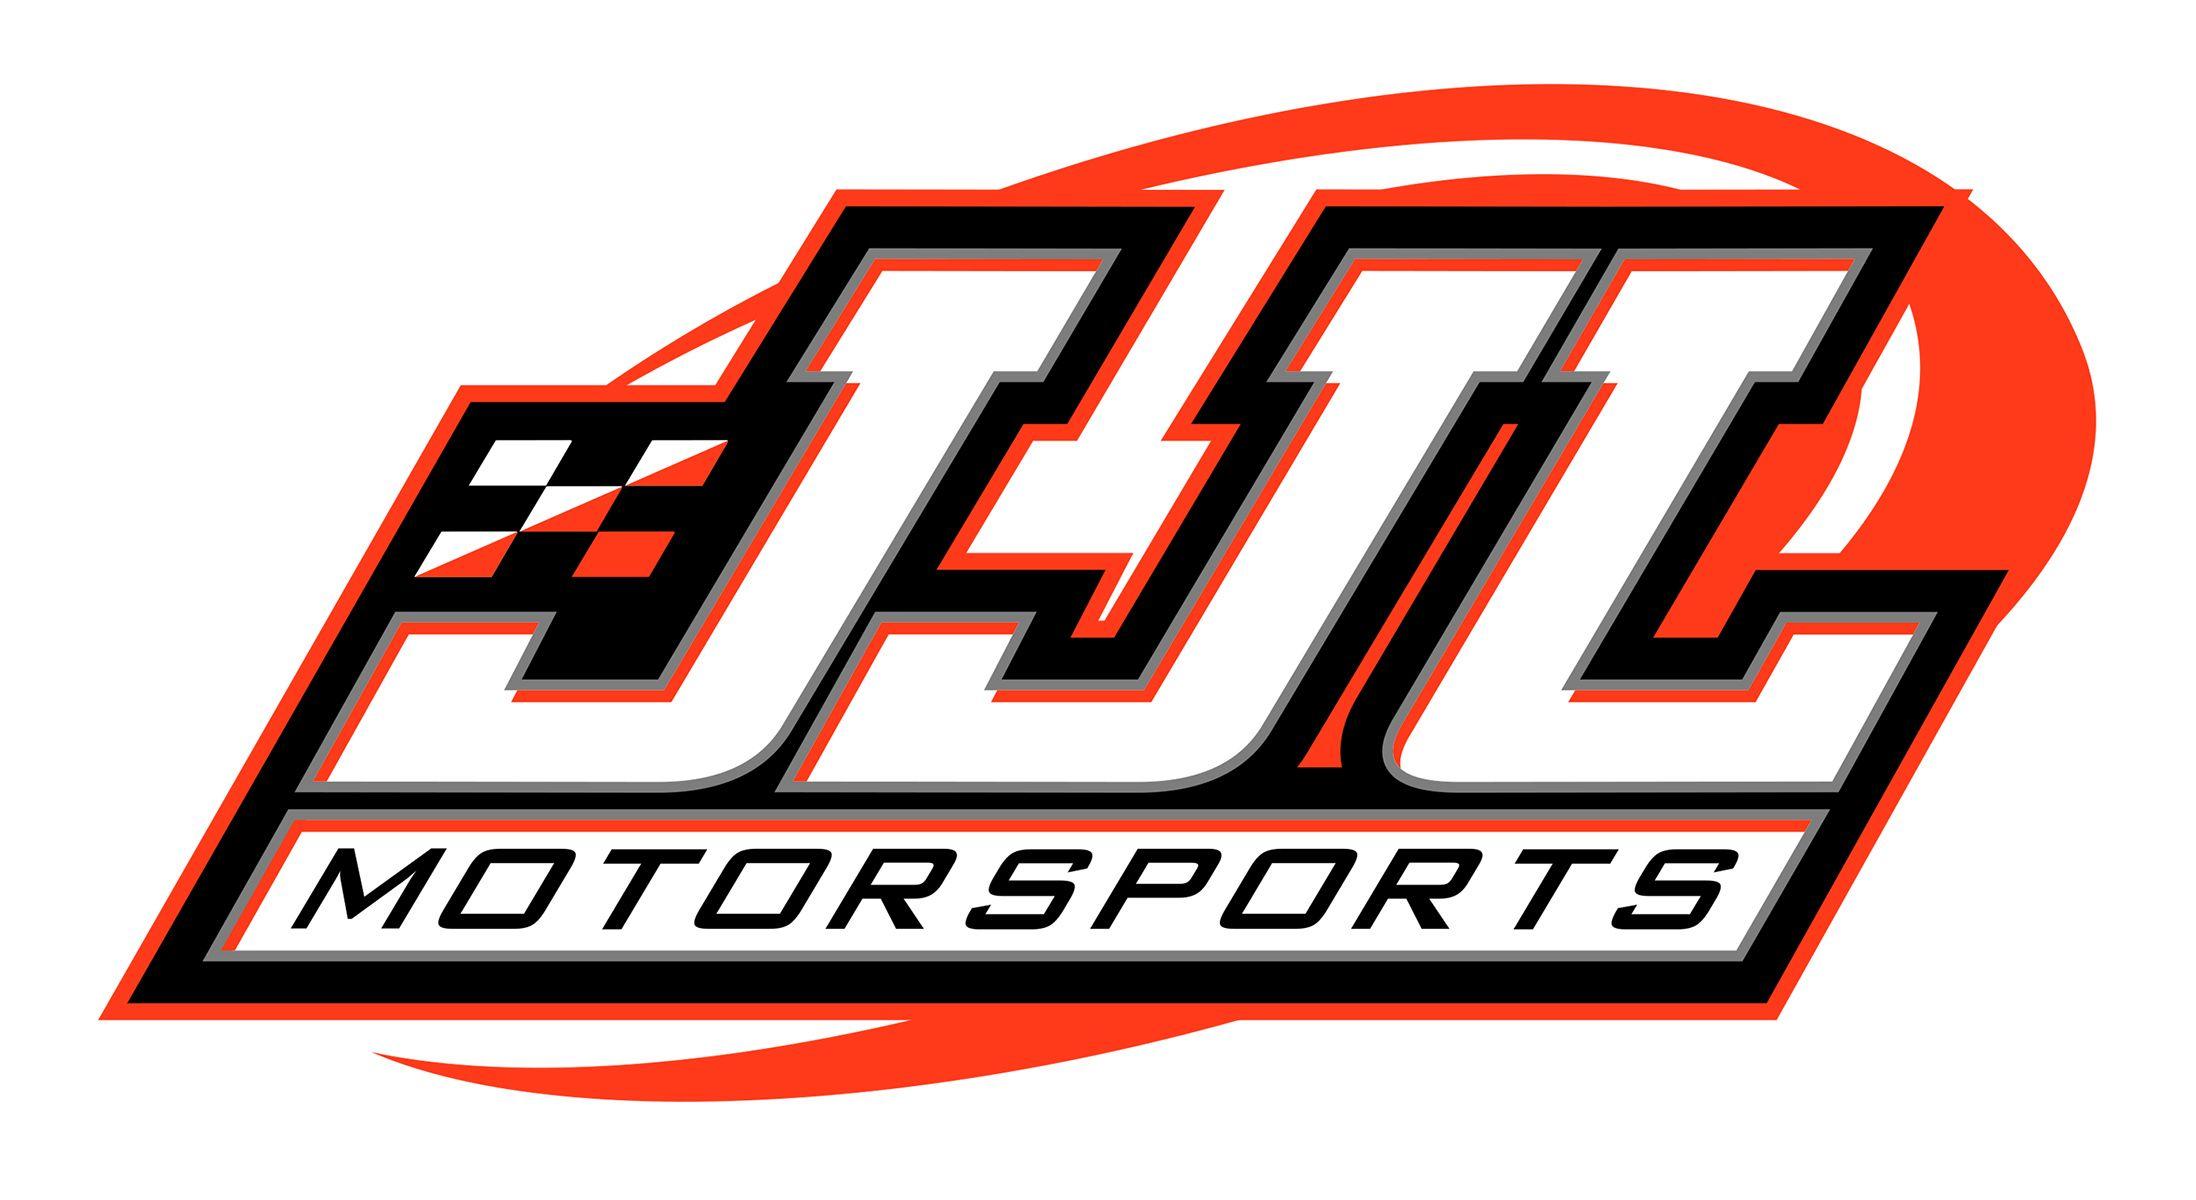 NASCAR Motorsports Logo - JJL Motorsports set for increased NASCAR Truck Series presence